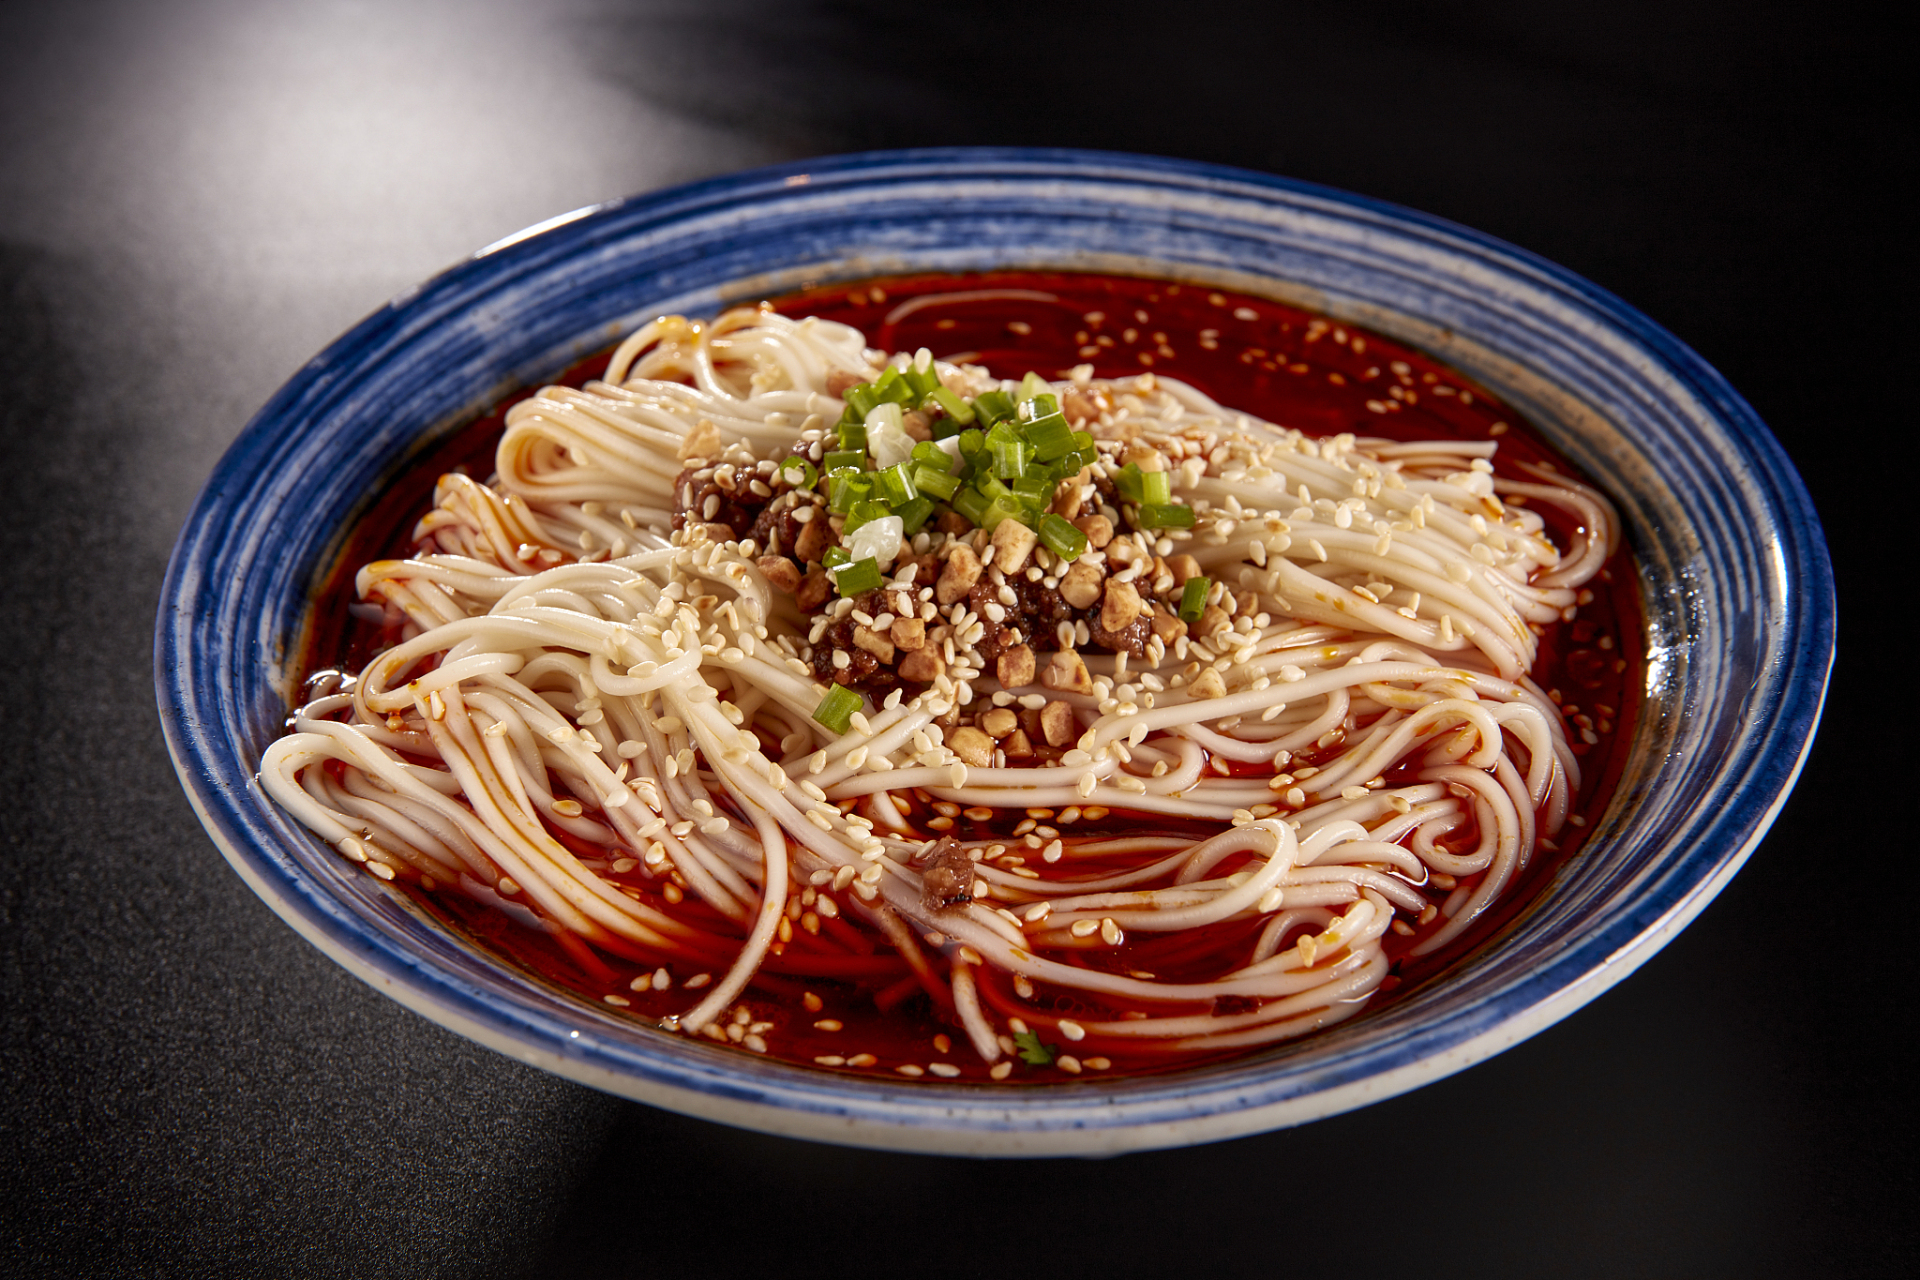 担担面是四川成都和自贡的特色小吃,也是中国十大名面条之一